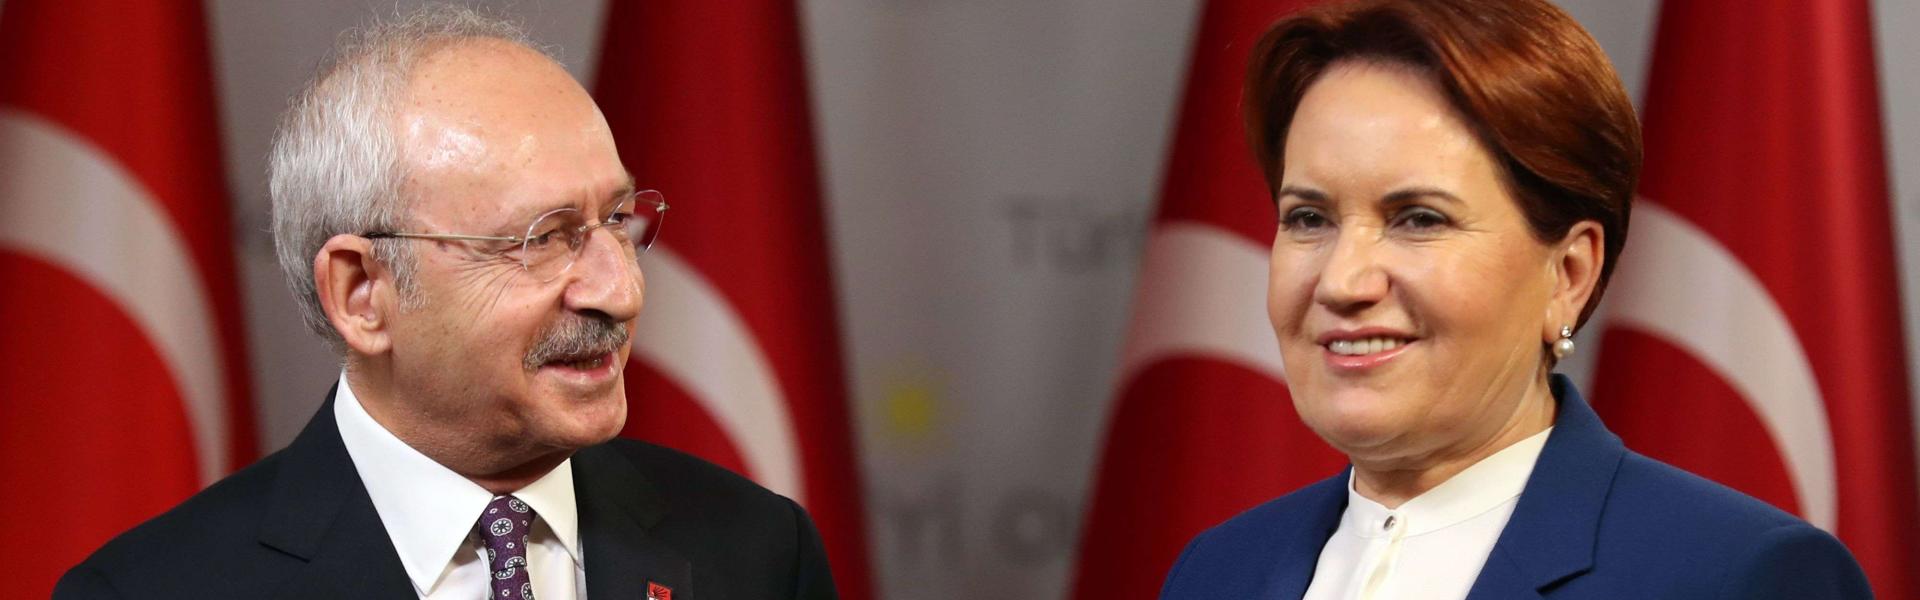 Erdoğan Twitter post accuses Turkish opposition of treason, terror links 4